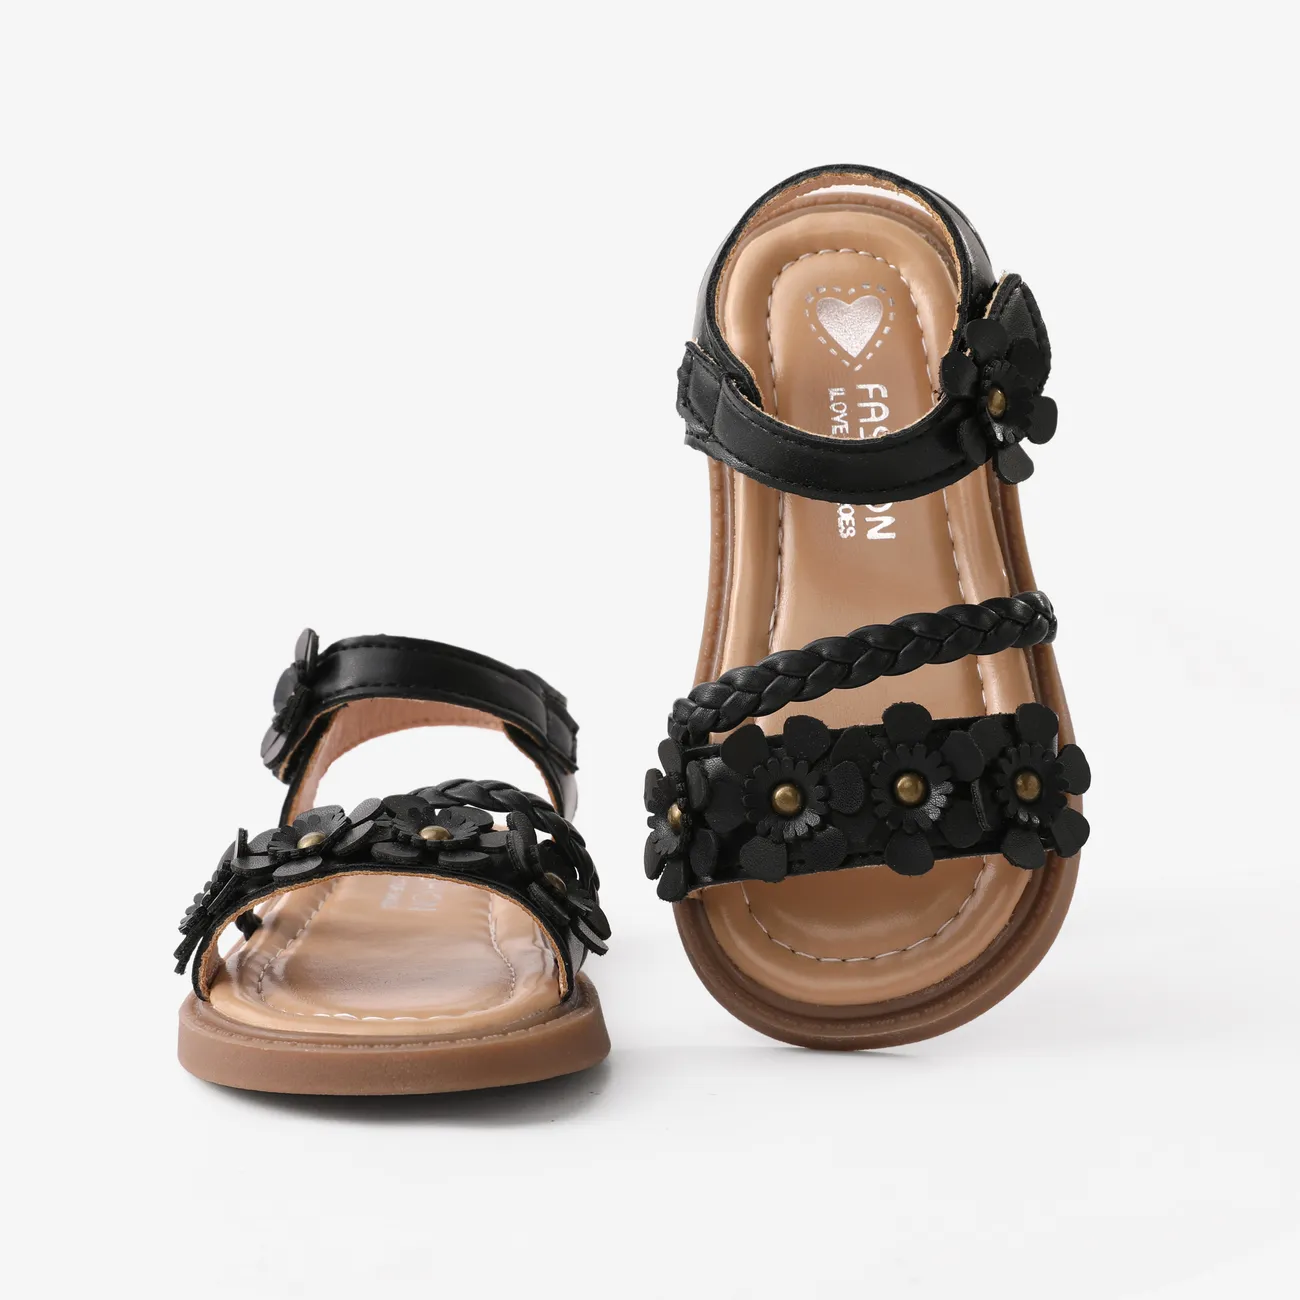 Toddler/Kids Girls Hyper-Tactile 3D Flower Sandals Black big image 1